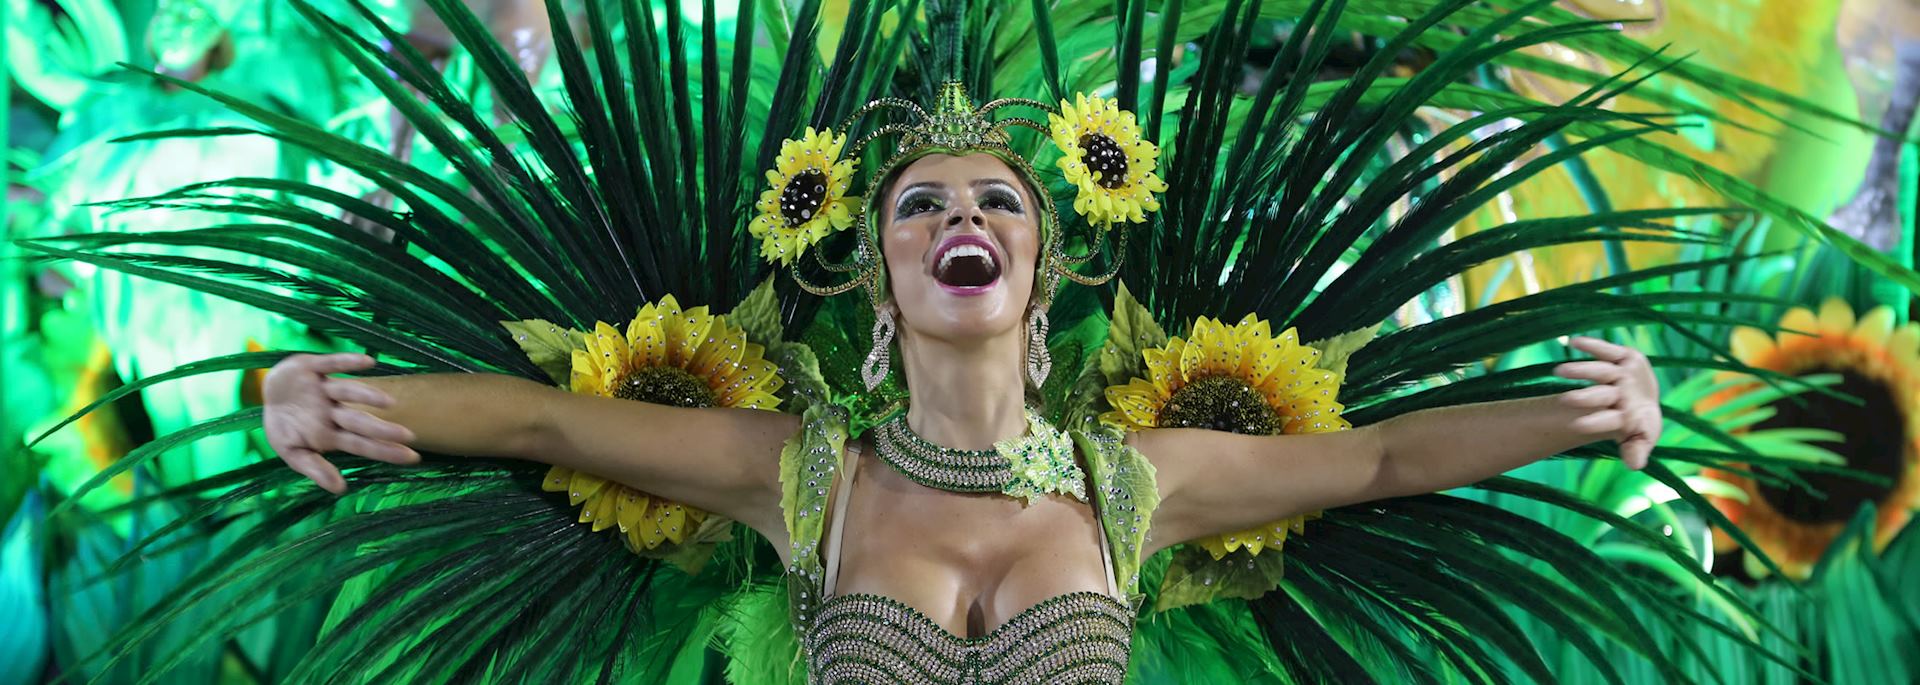 The Rio Carnival